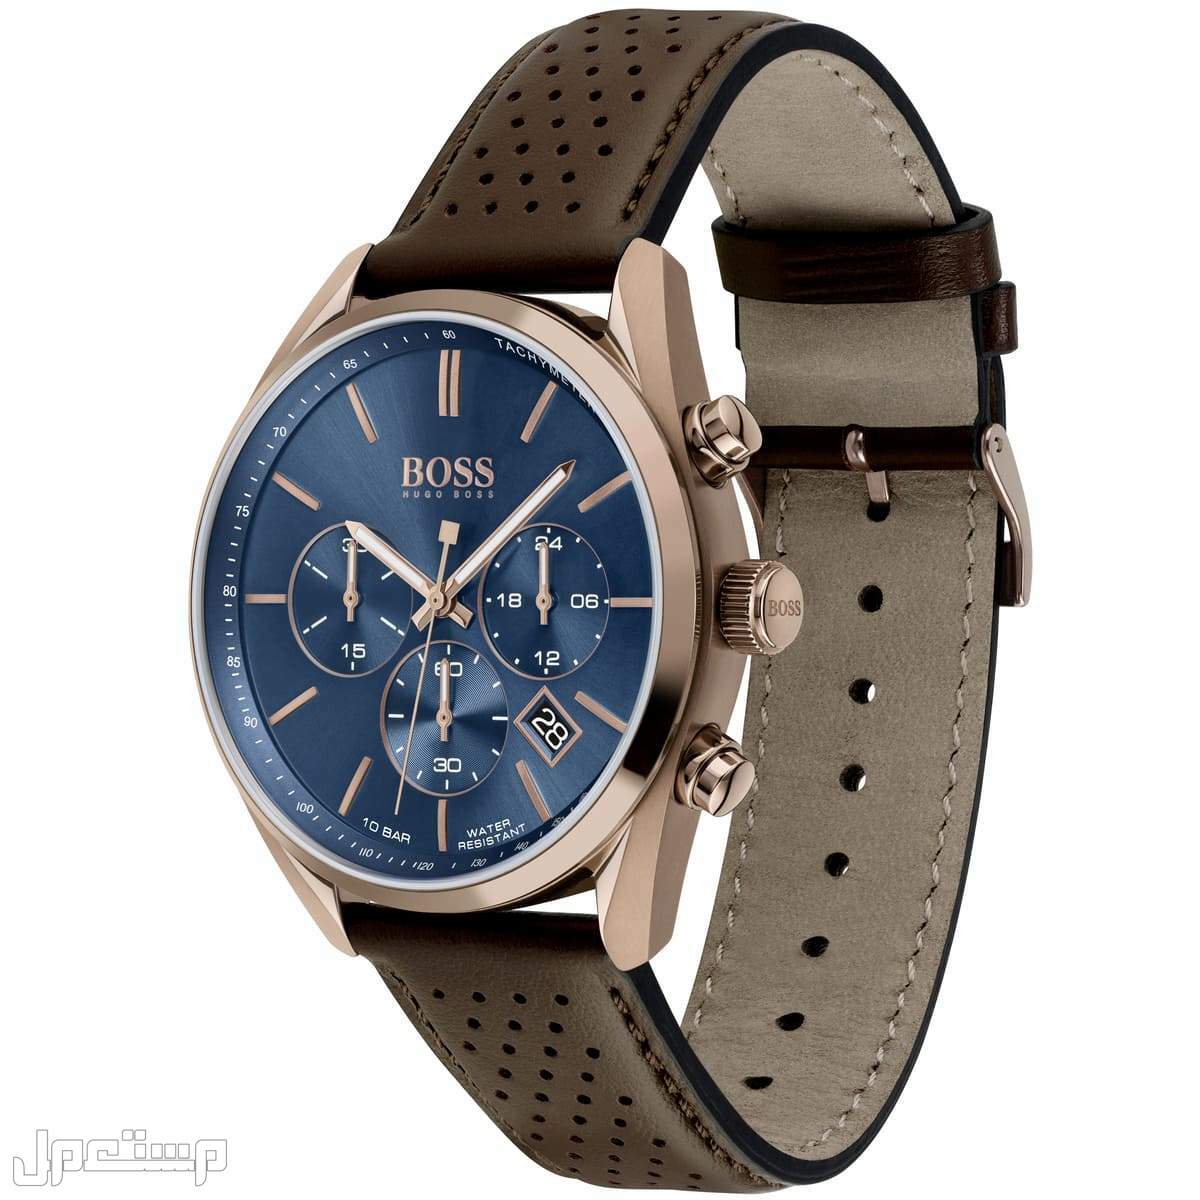 أفضل ساعات بوس Boss الأكثر مبيعا هذا العام وأسعارها في المغرب ساع 1513817-hugo-boss-watch-men-blue-dial-leather-brown-strap-quartz-analog-chro